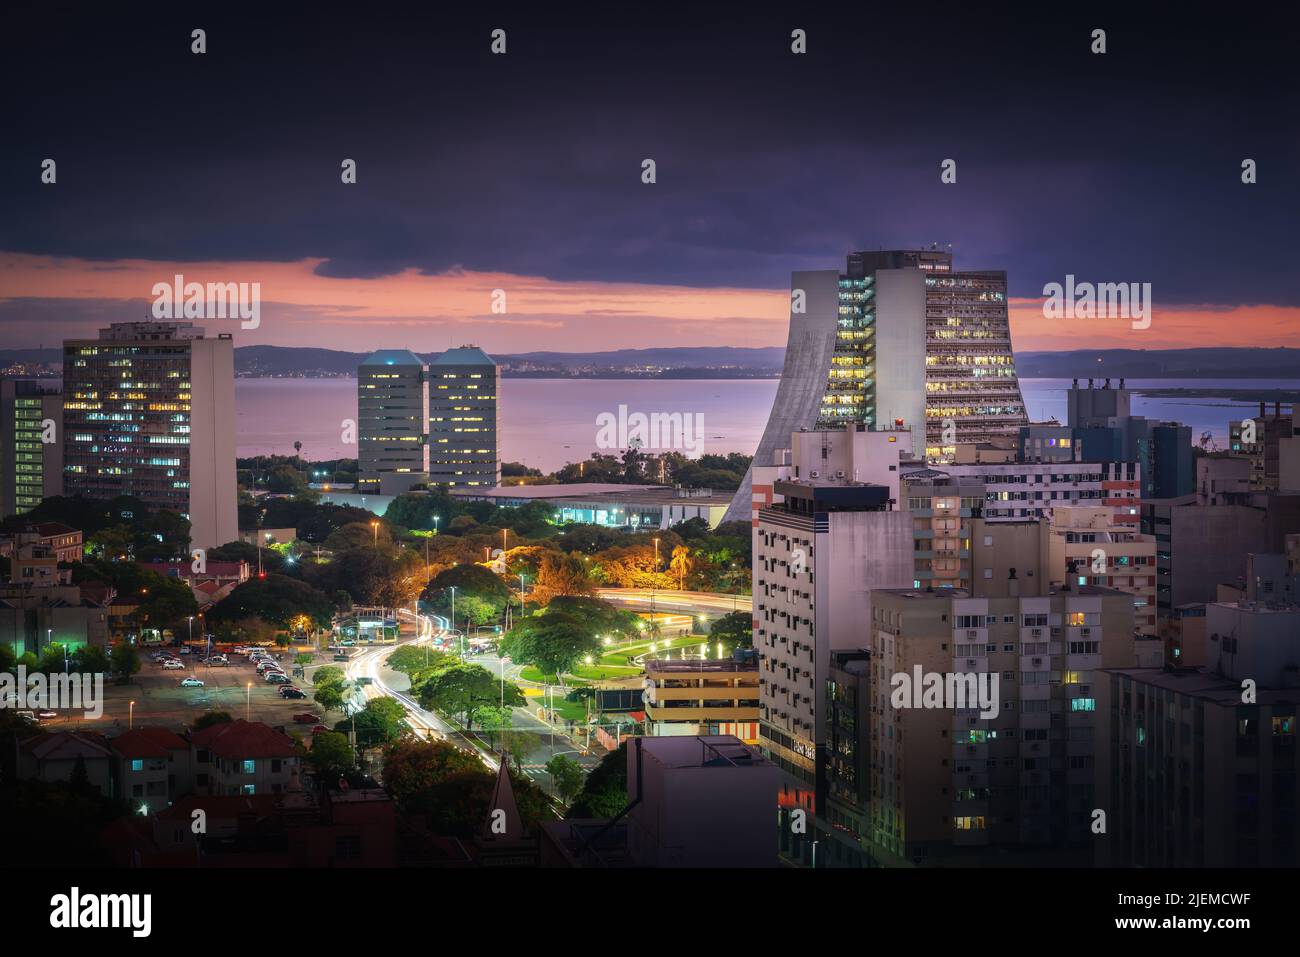 Aerial view of Porto Alegre at night with Rio Grande do Sul State Administrative Building - Porto Alegre, Rio Grande do Sul, Brazil Stock Photo